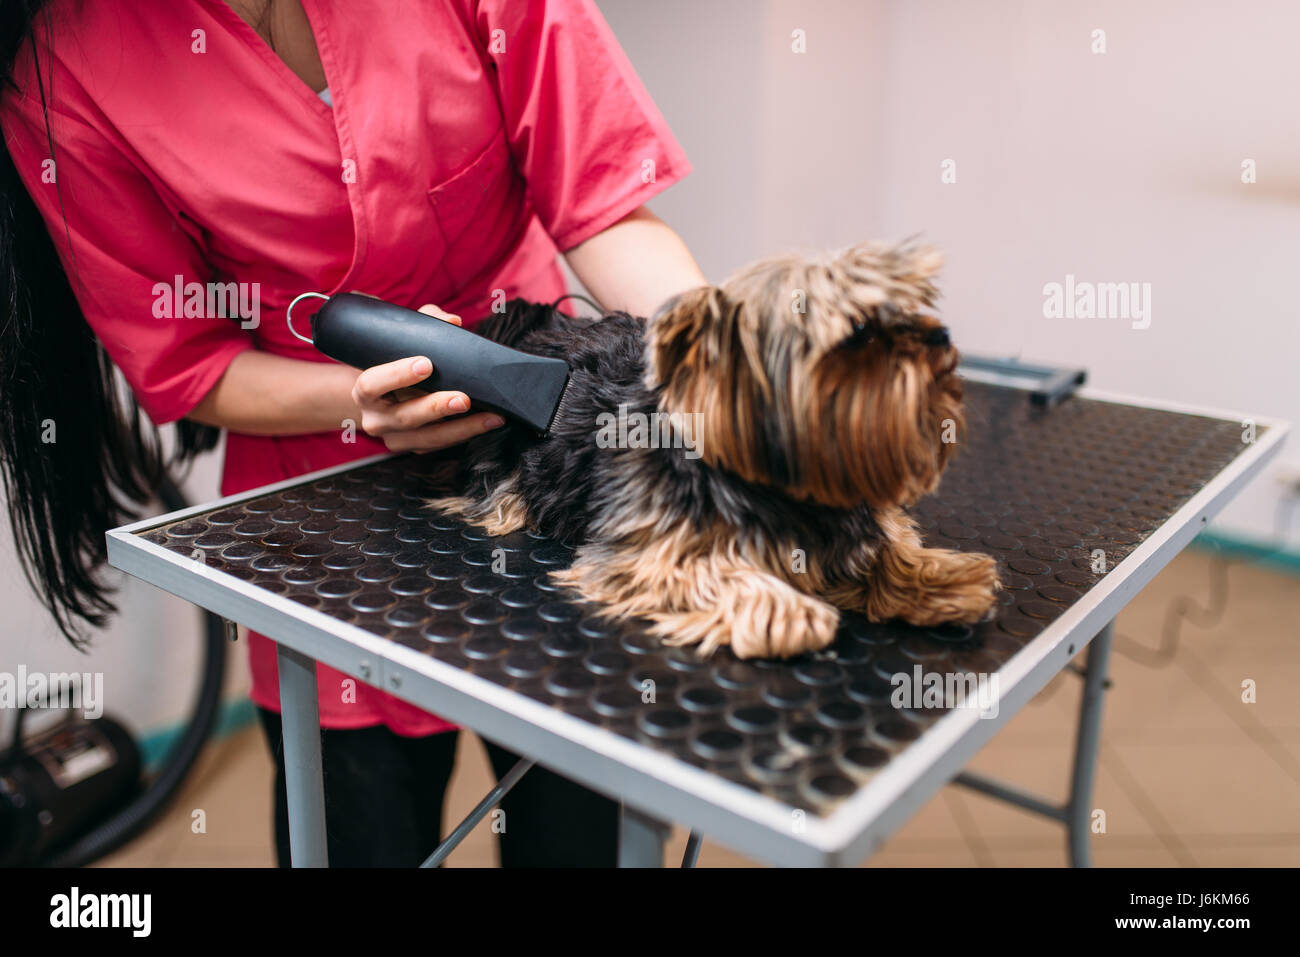 Hundefriseur mit kleinen Hund Frisur Haarschnitt Maschine. Professionelle Pflege und Reinigungs-Service für Haustiere Stockfoto